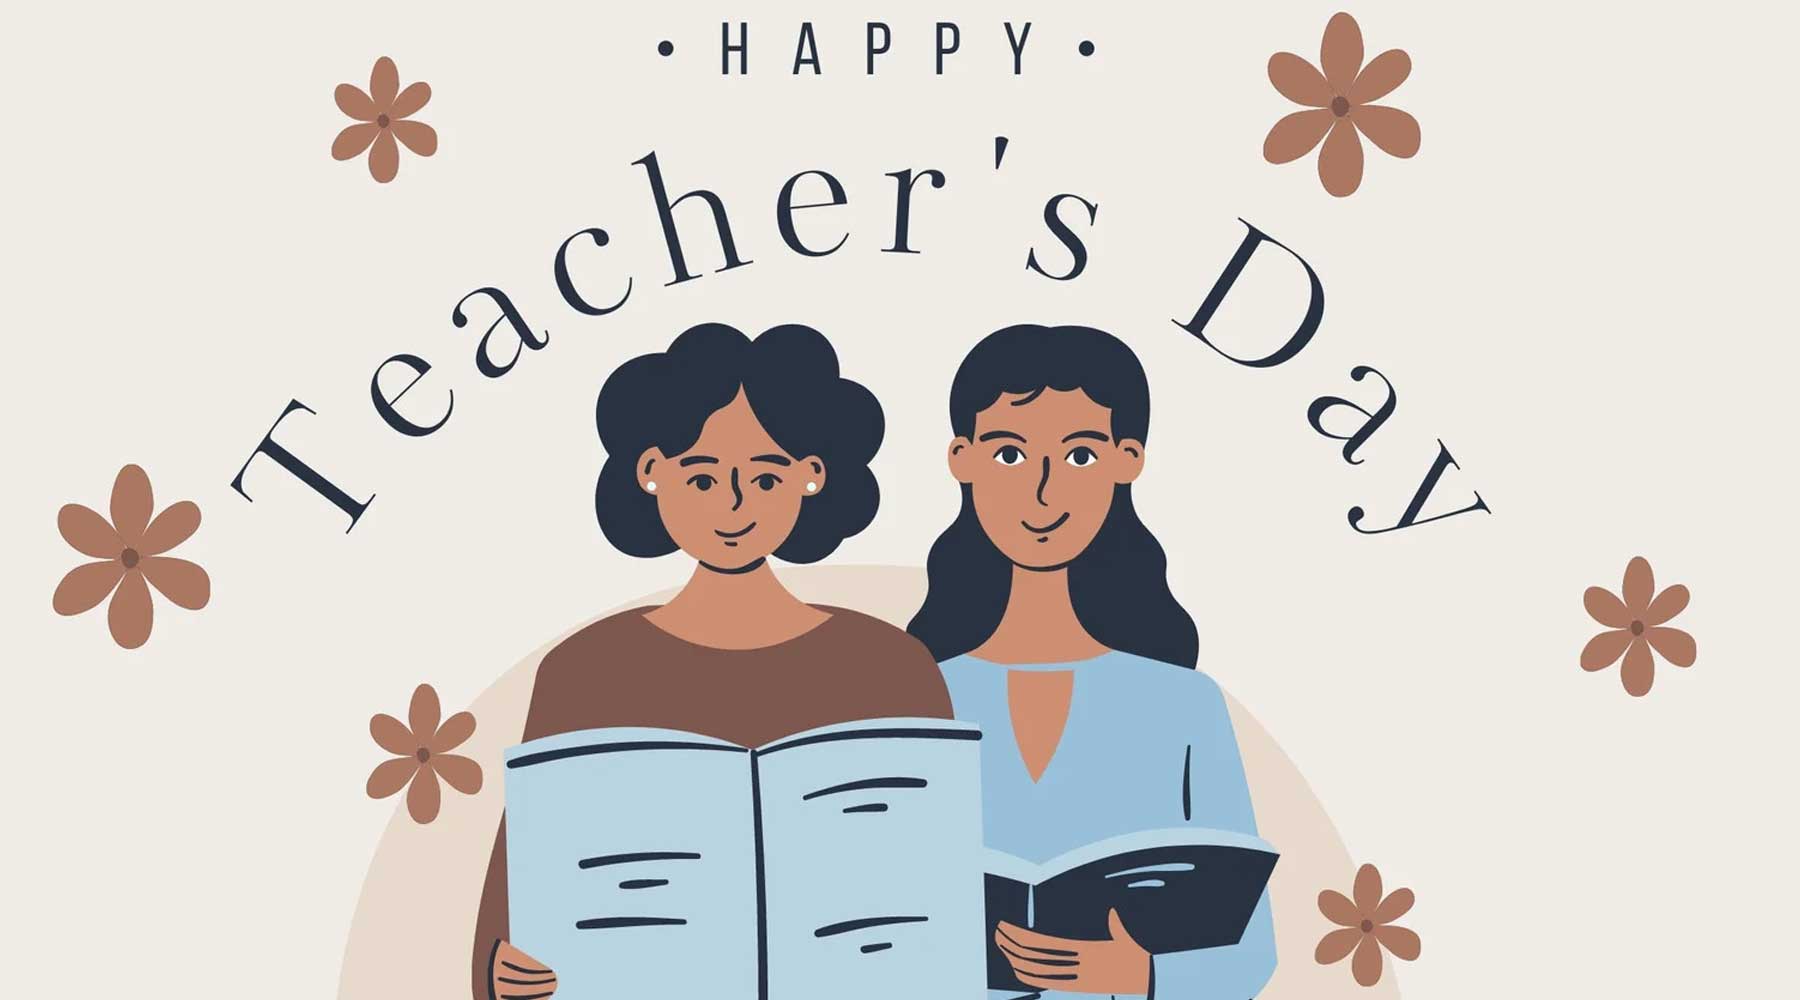 تبریک روز معلم به انگلیسی با ترجمه